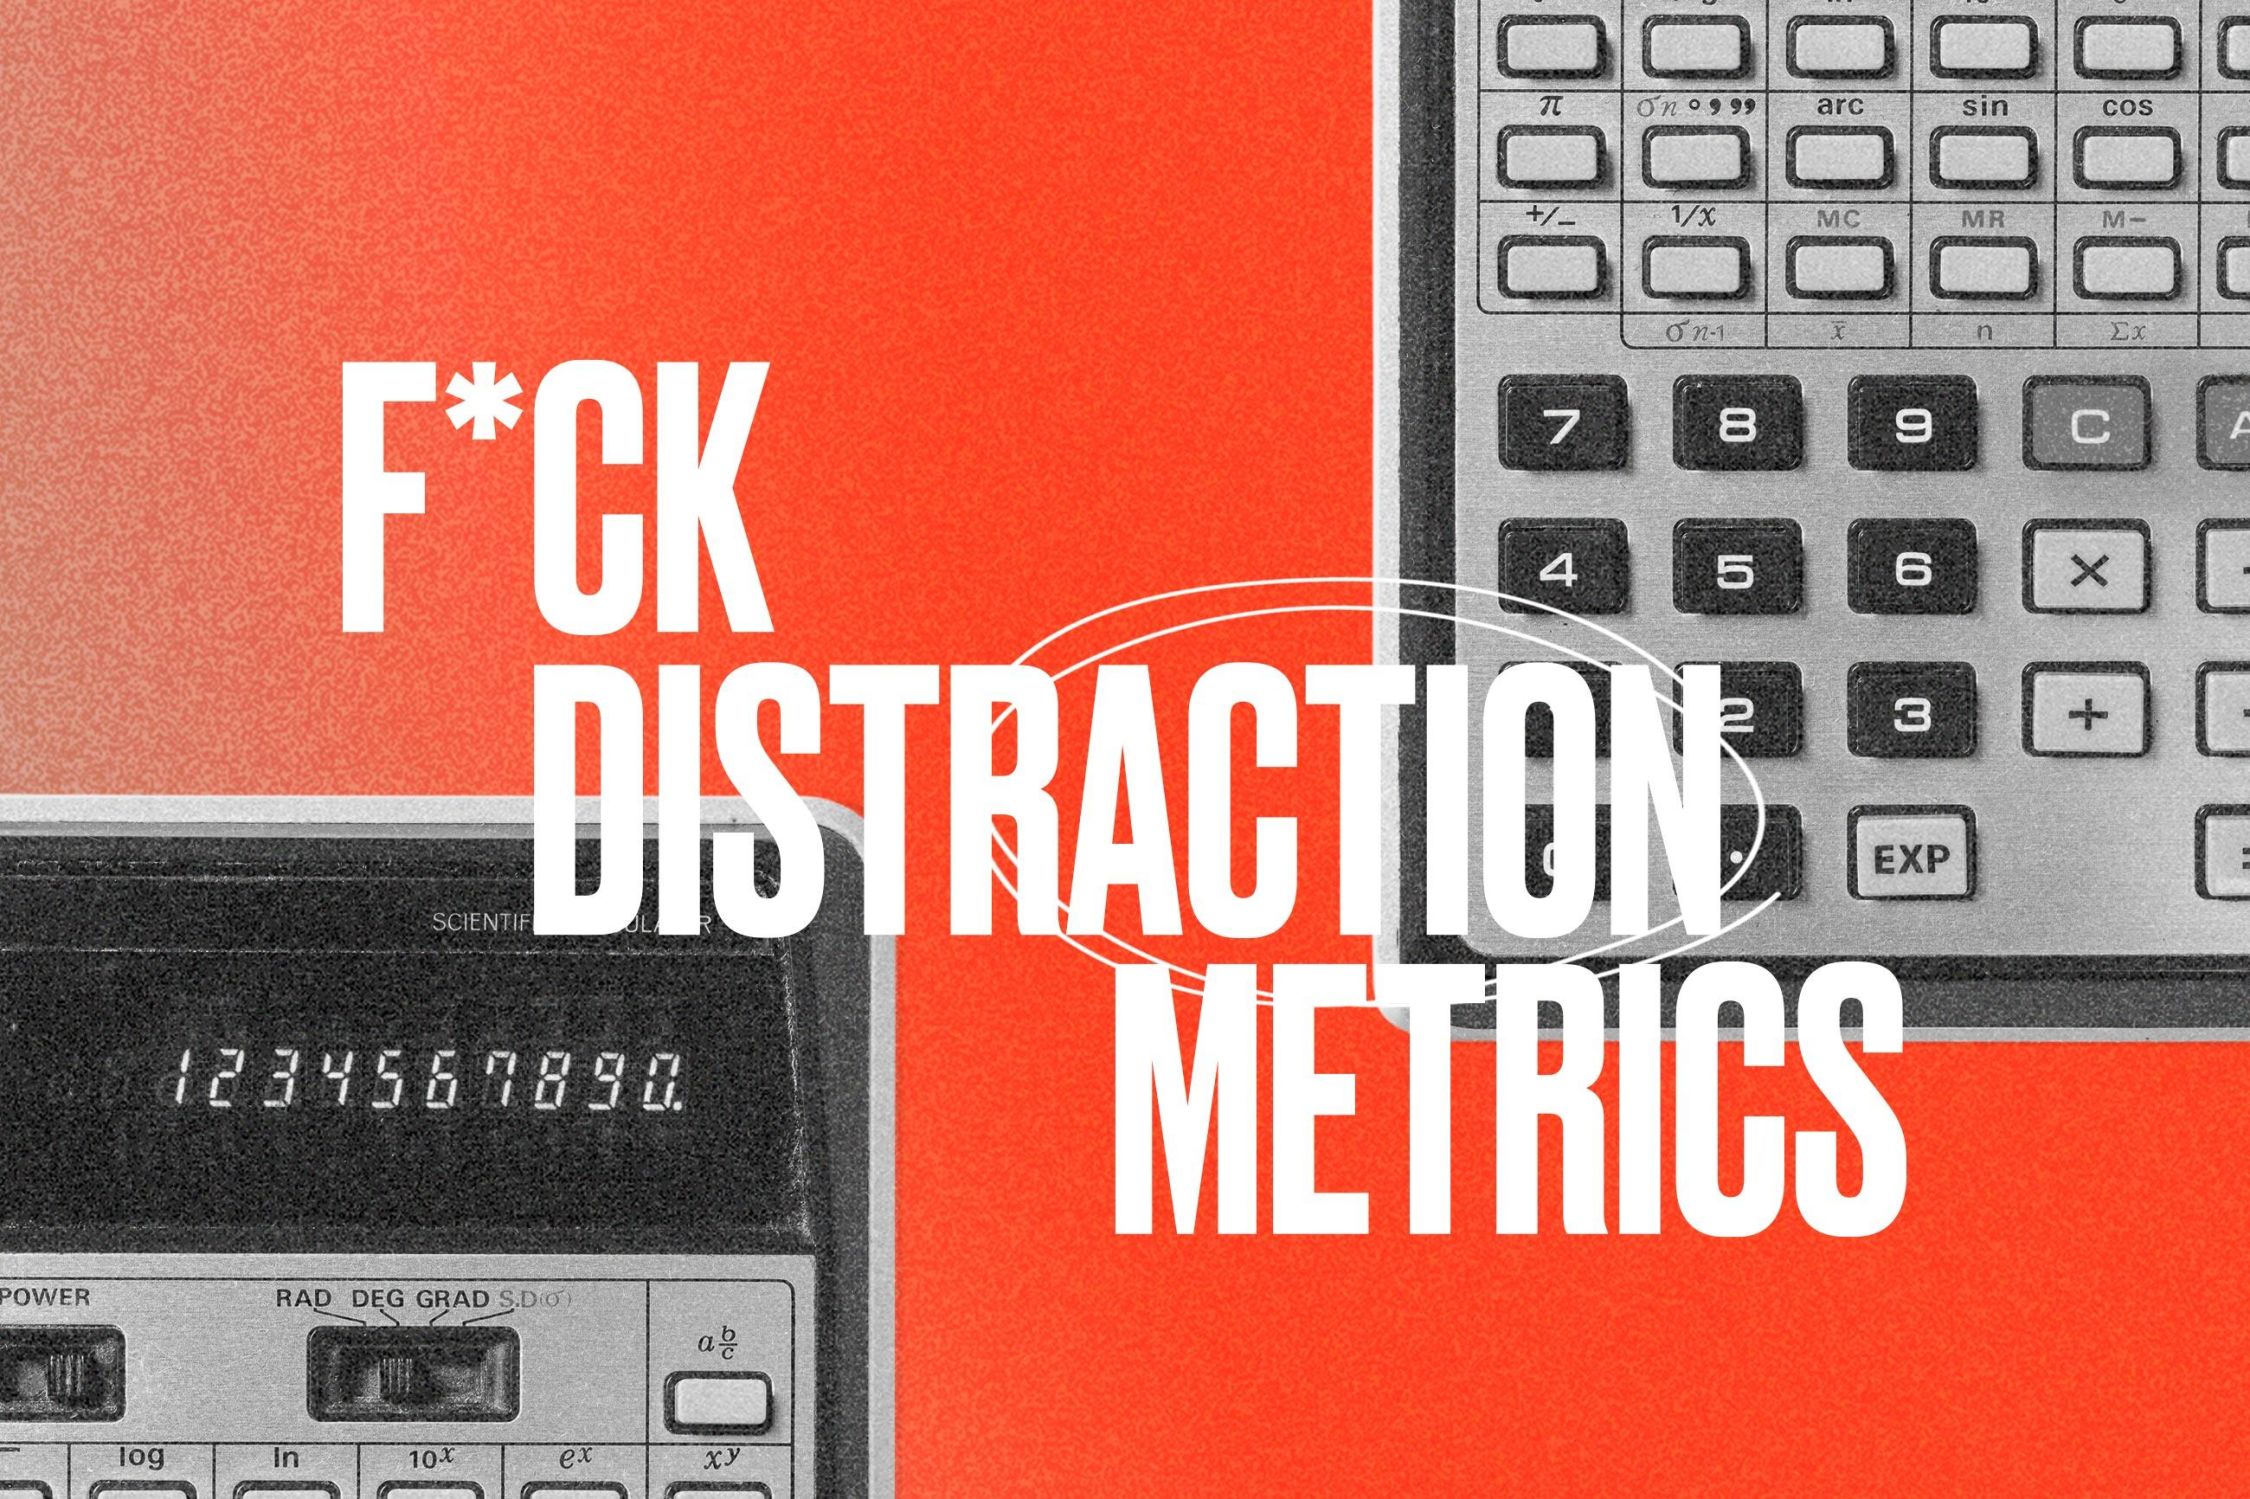 Distraction metrics